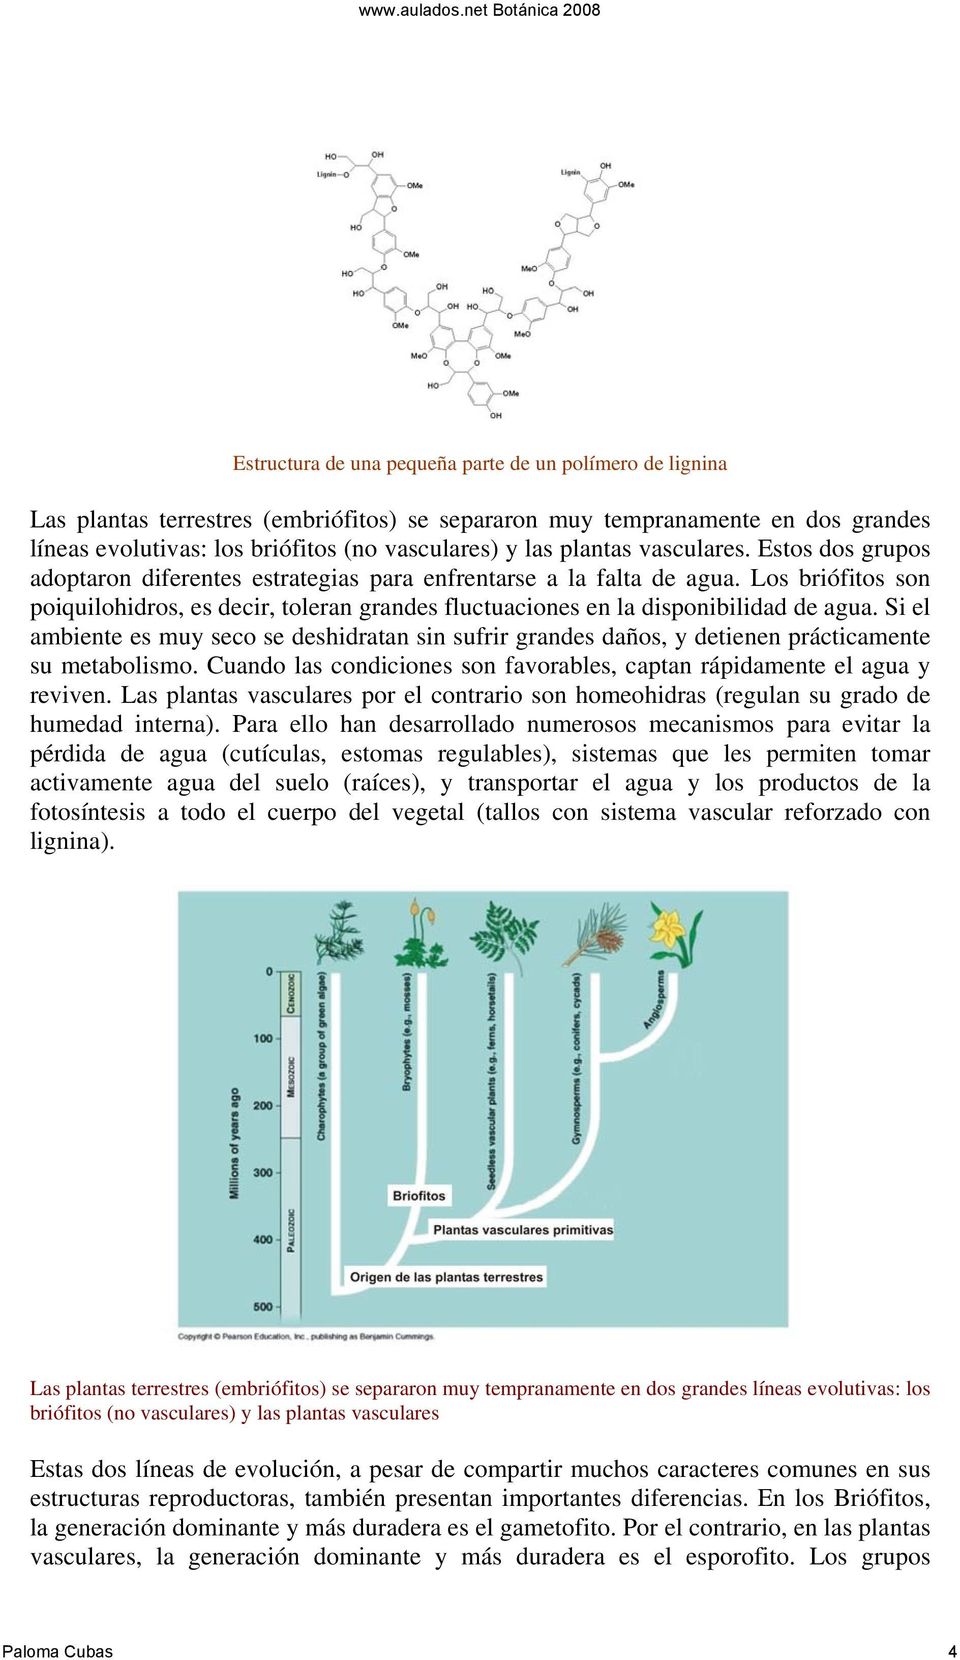 Los briófitos son poiquilohidros, es decir, toleran grandes fluctuaciones en la disponibilidad de agua.